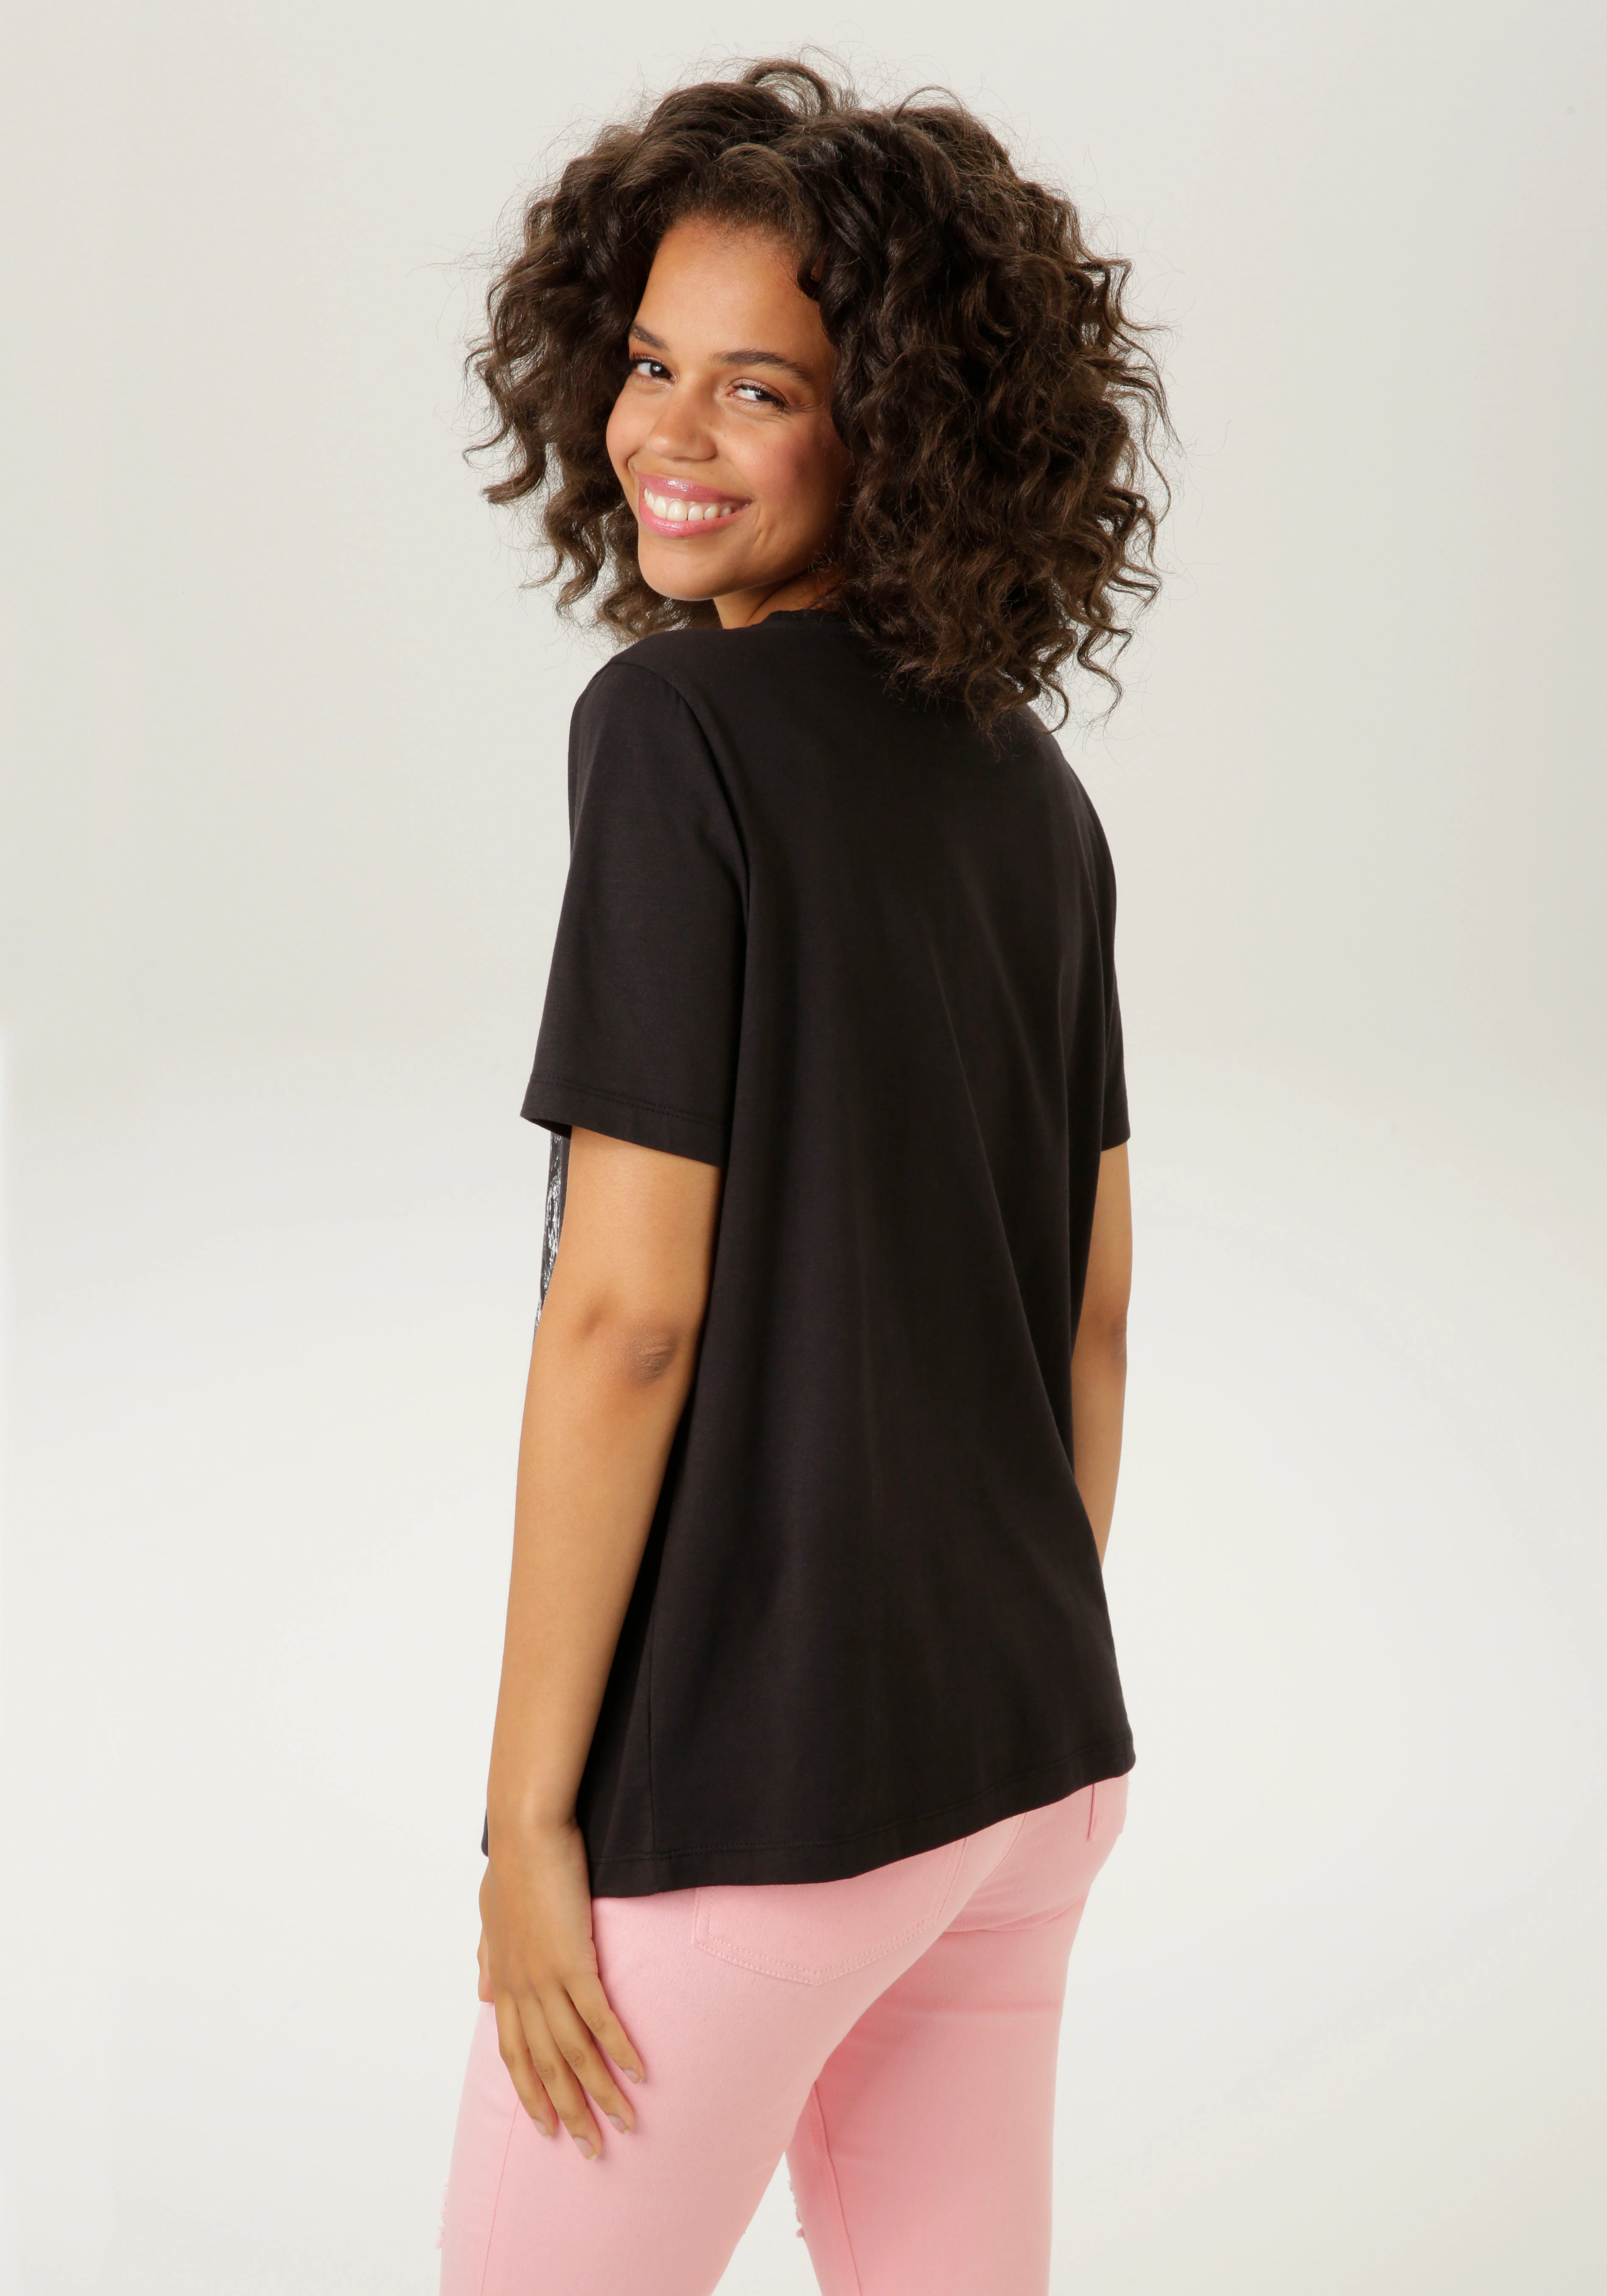 Aniston CASUAL T-Shirt, mit Smiley-Frontprint im Animal-Look günstig online kaufen